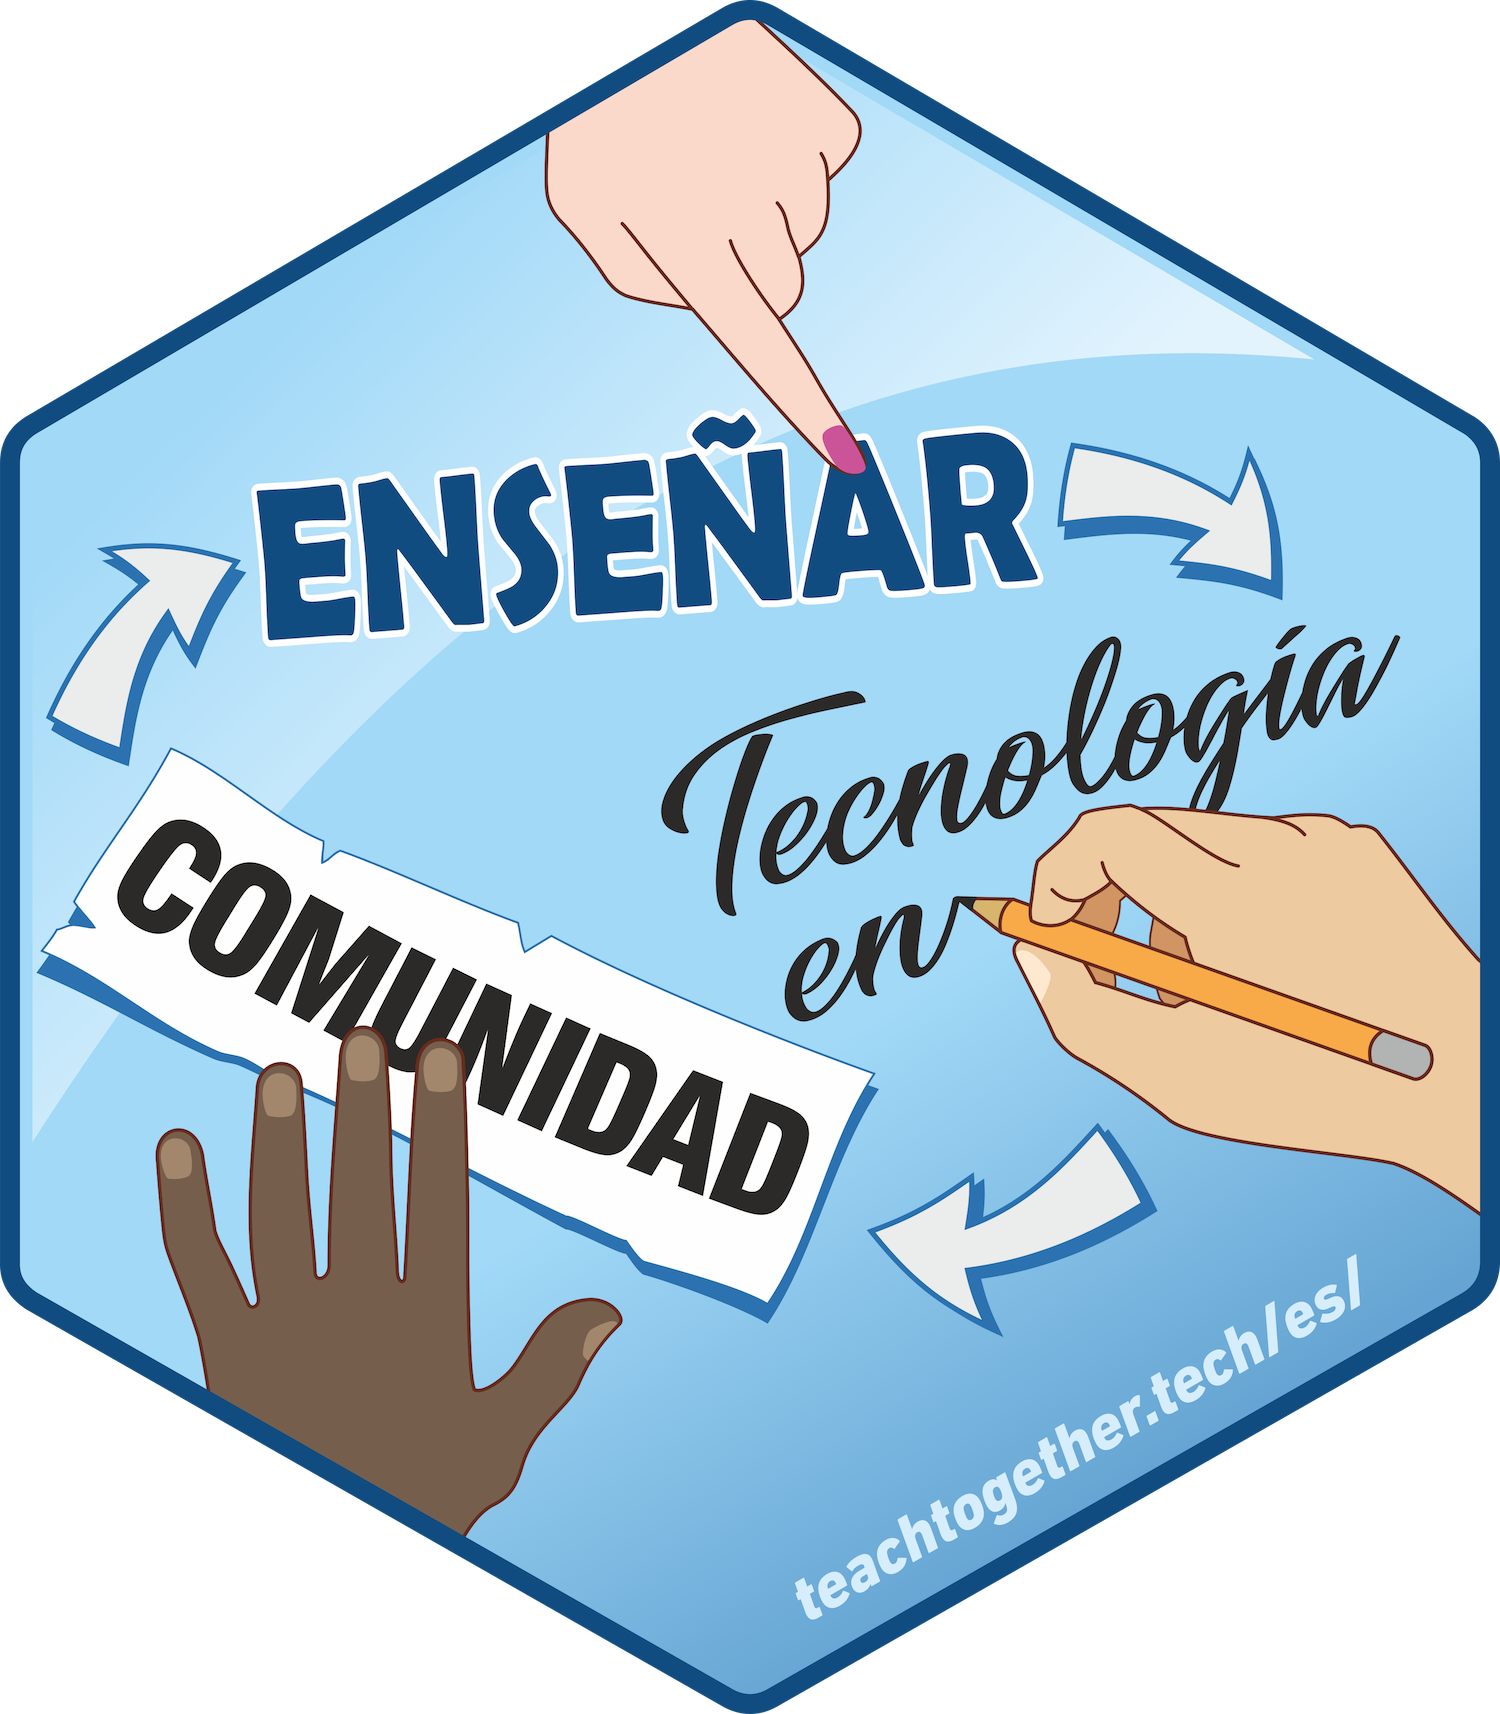 Etiqueta hexagonal ("hex sticker") para el proyecto titulado "Enseñar Tecnología en Comunidad." Las palabras parecen parte de un mapa conceptual y hay manos diferentes apuntando hacia ellas.